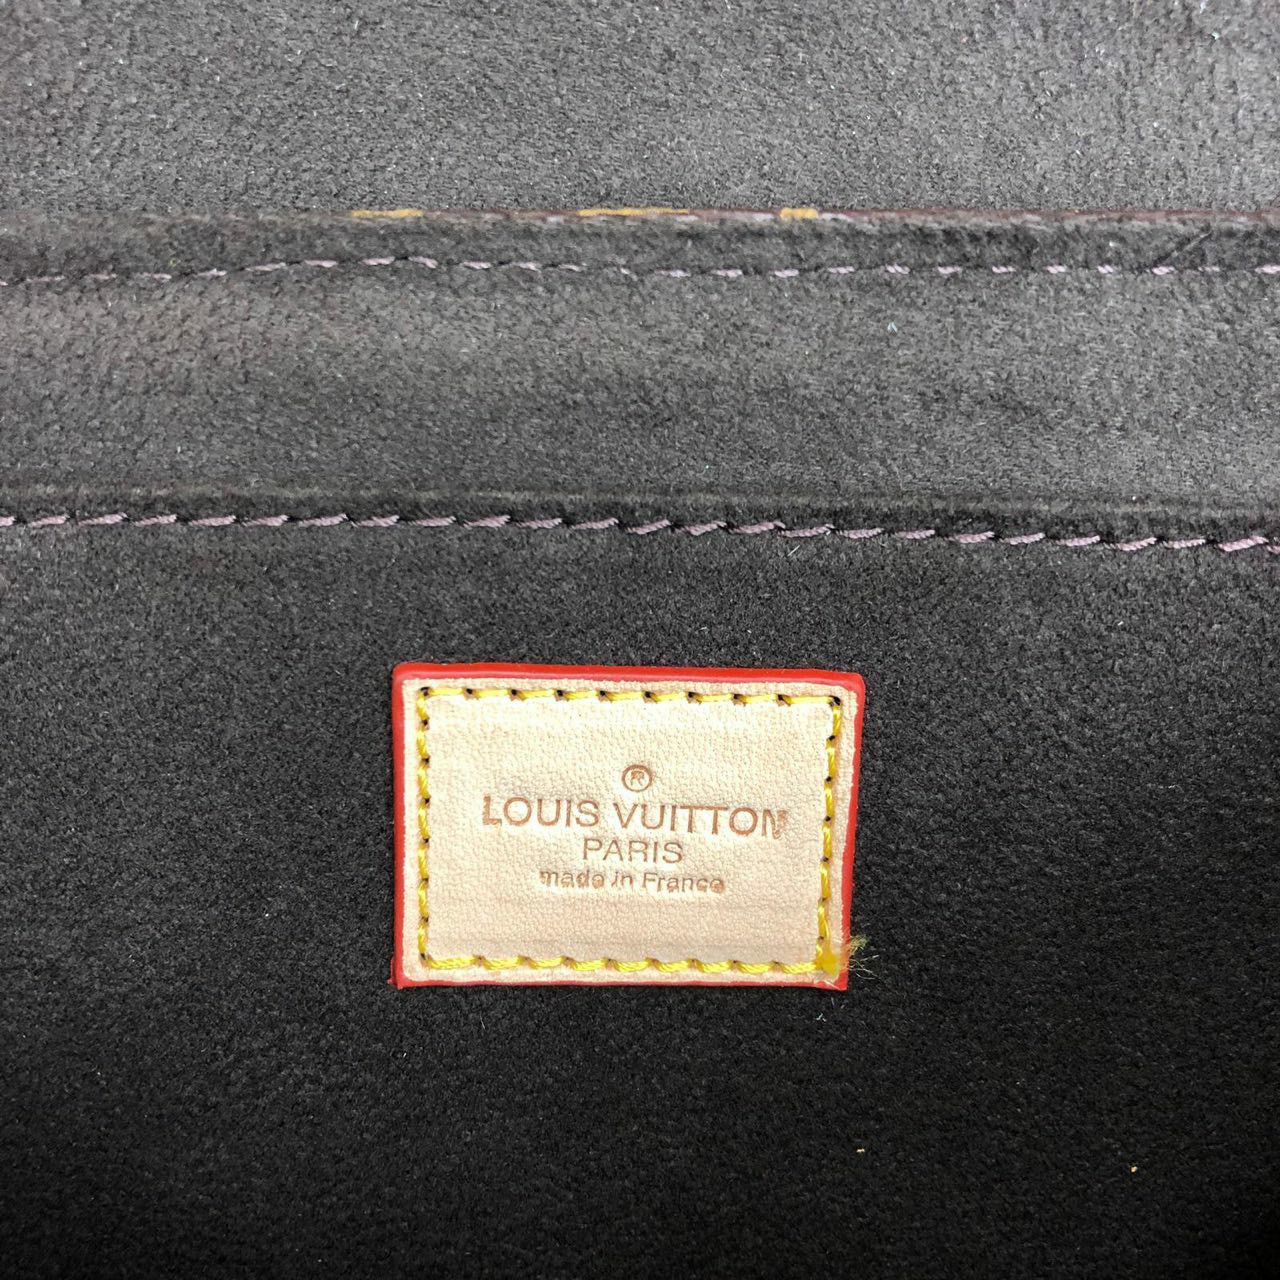 Louis Vuitton Croisette for Sale in Weehawken, NJ - OfferUp